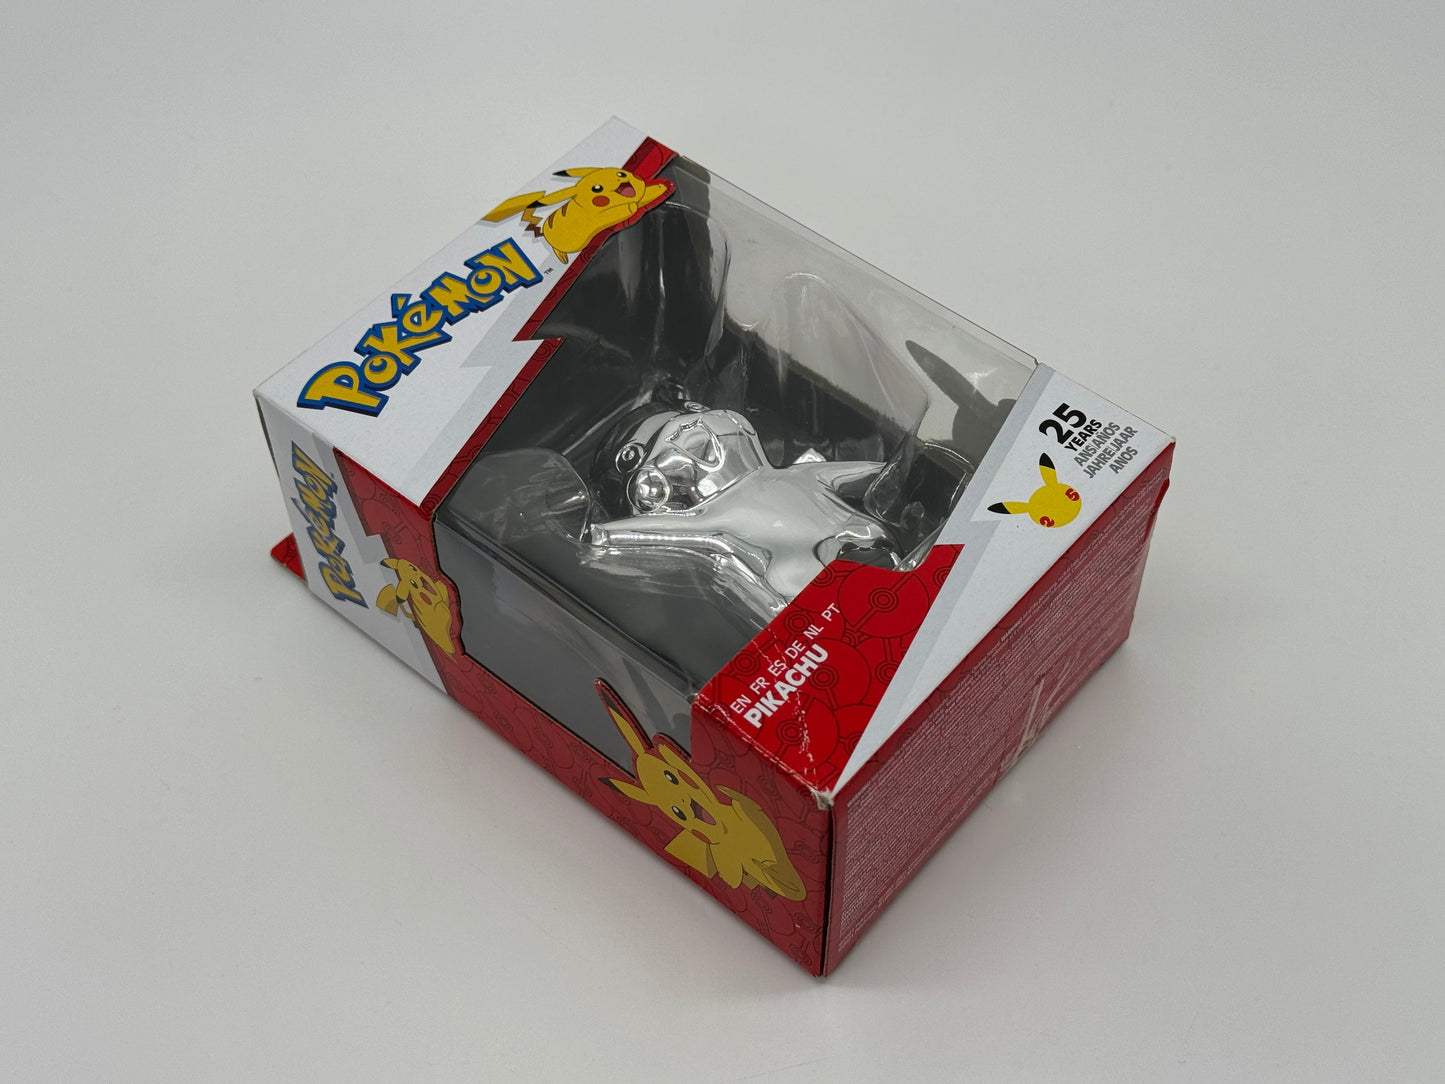 Pokémon "Pikachu" 25 Jahre Jubiläumsfigur Silberoptik Nintendo (Jazwares)